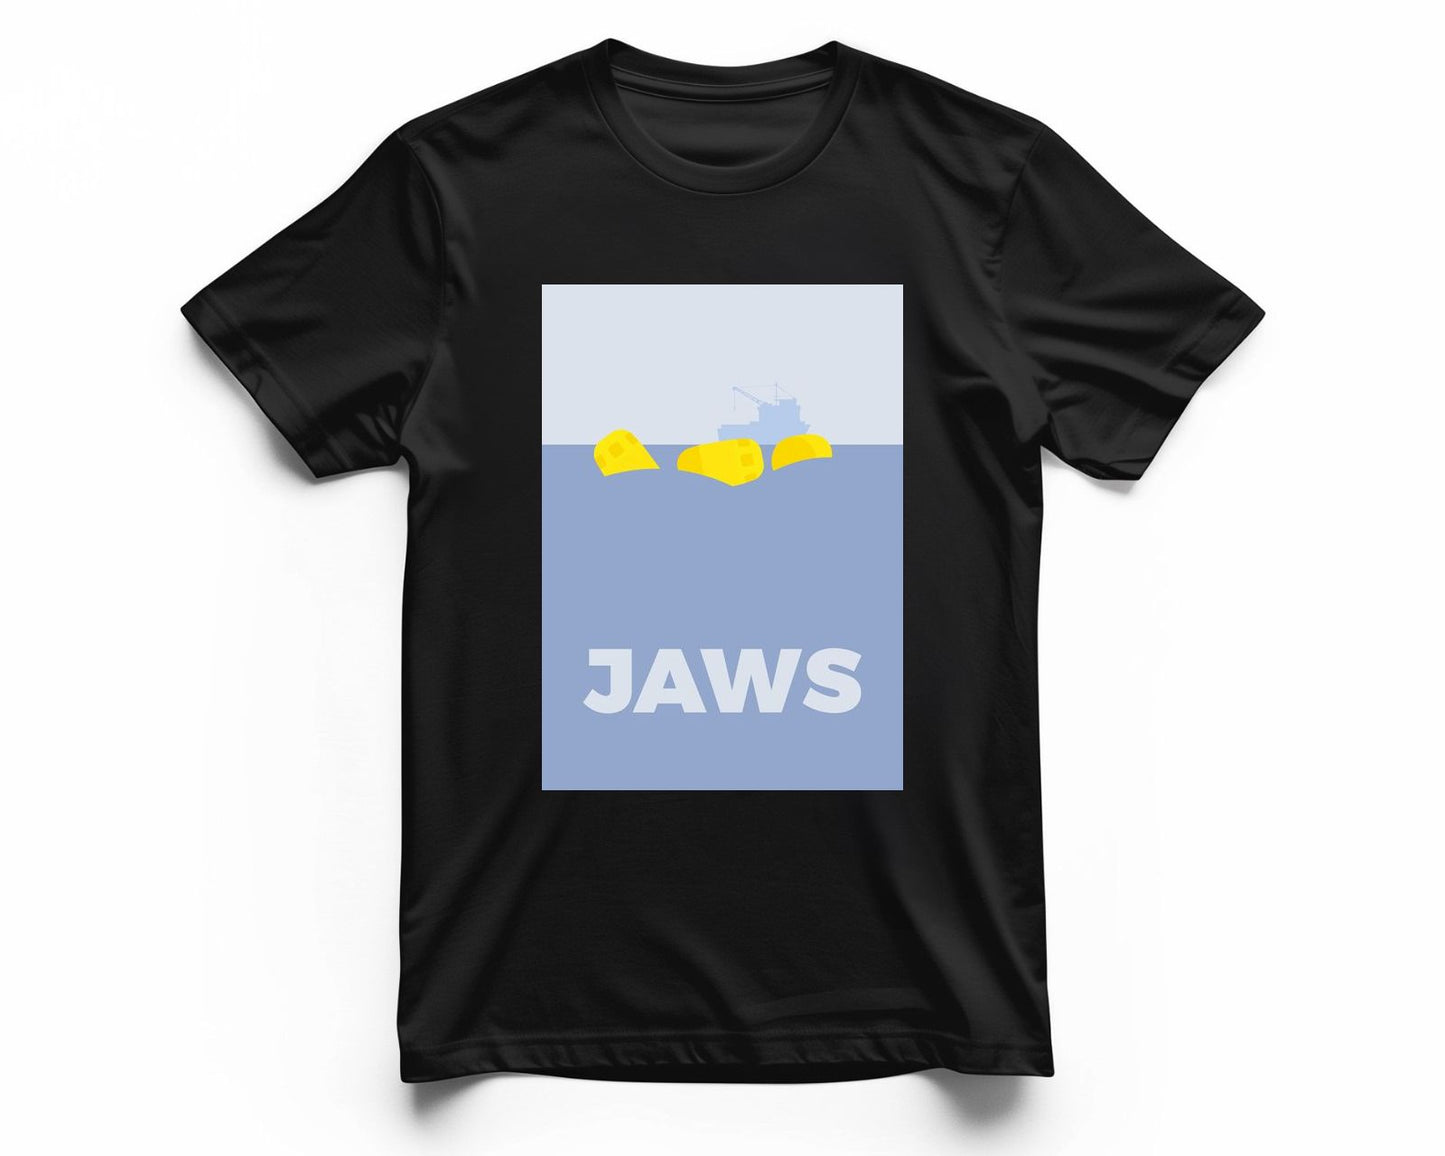 JAWS - @donluisjimenez